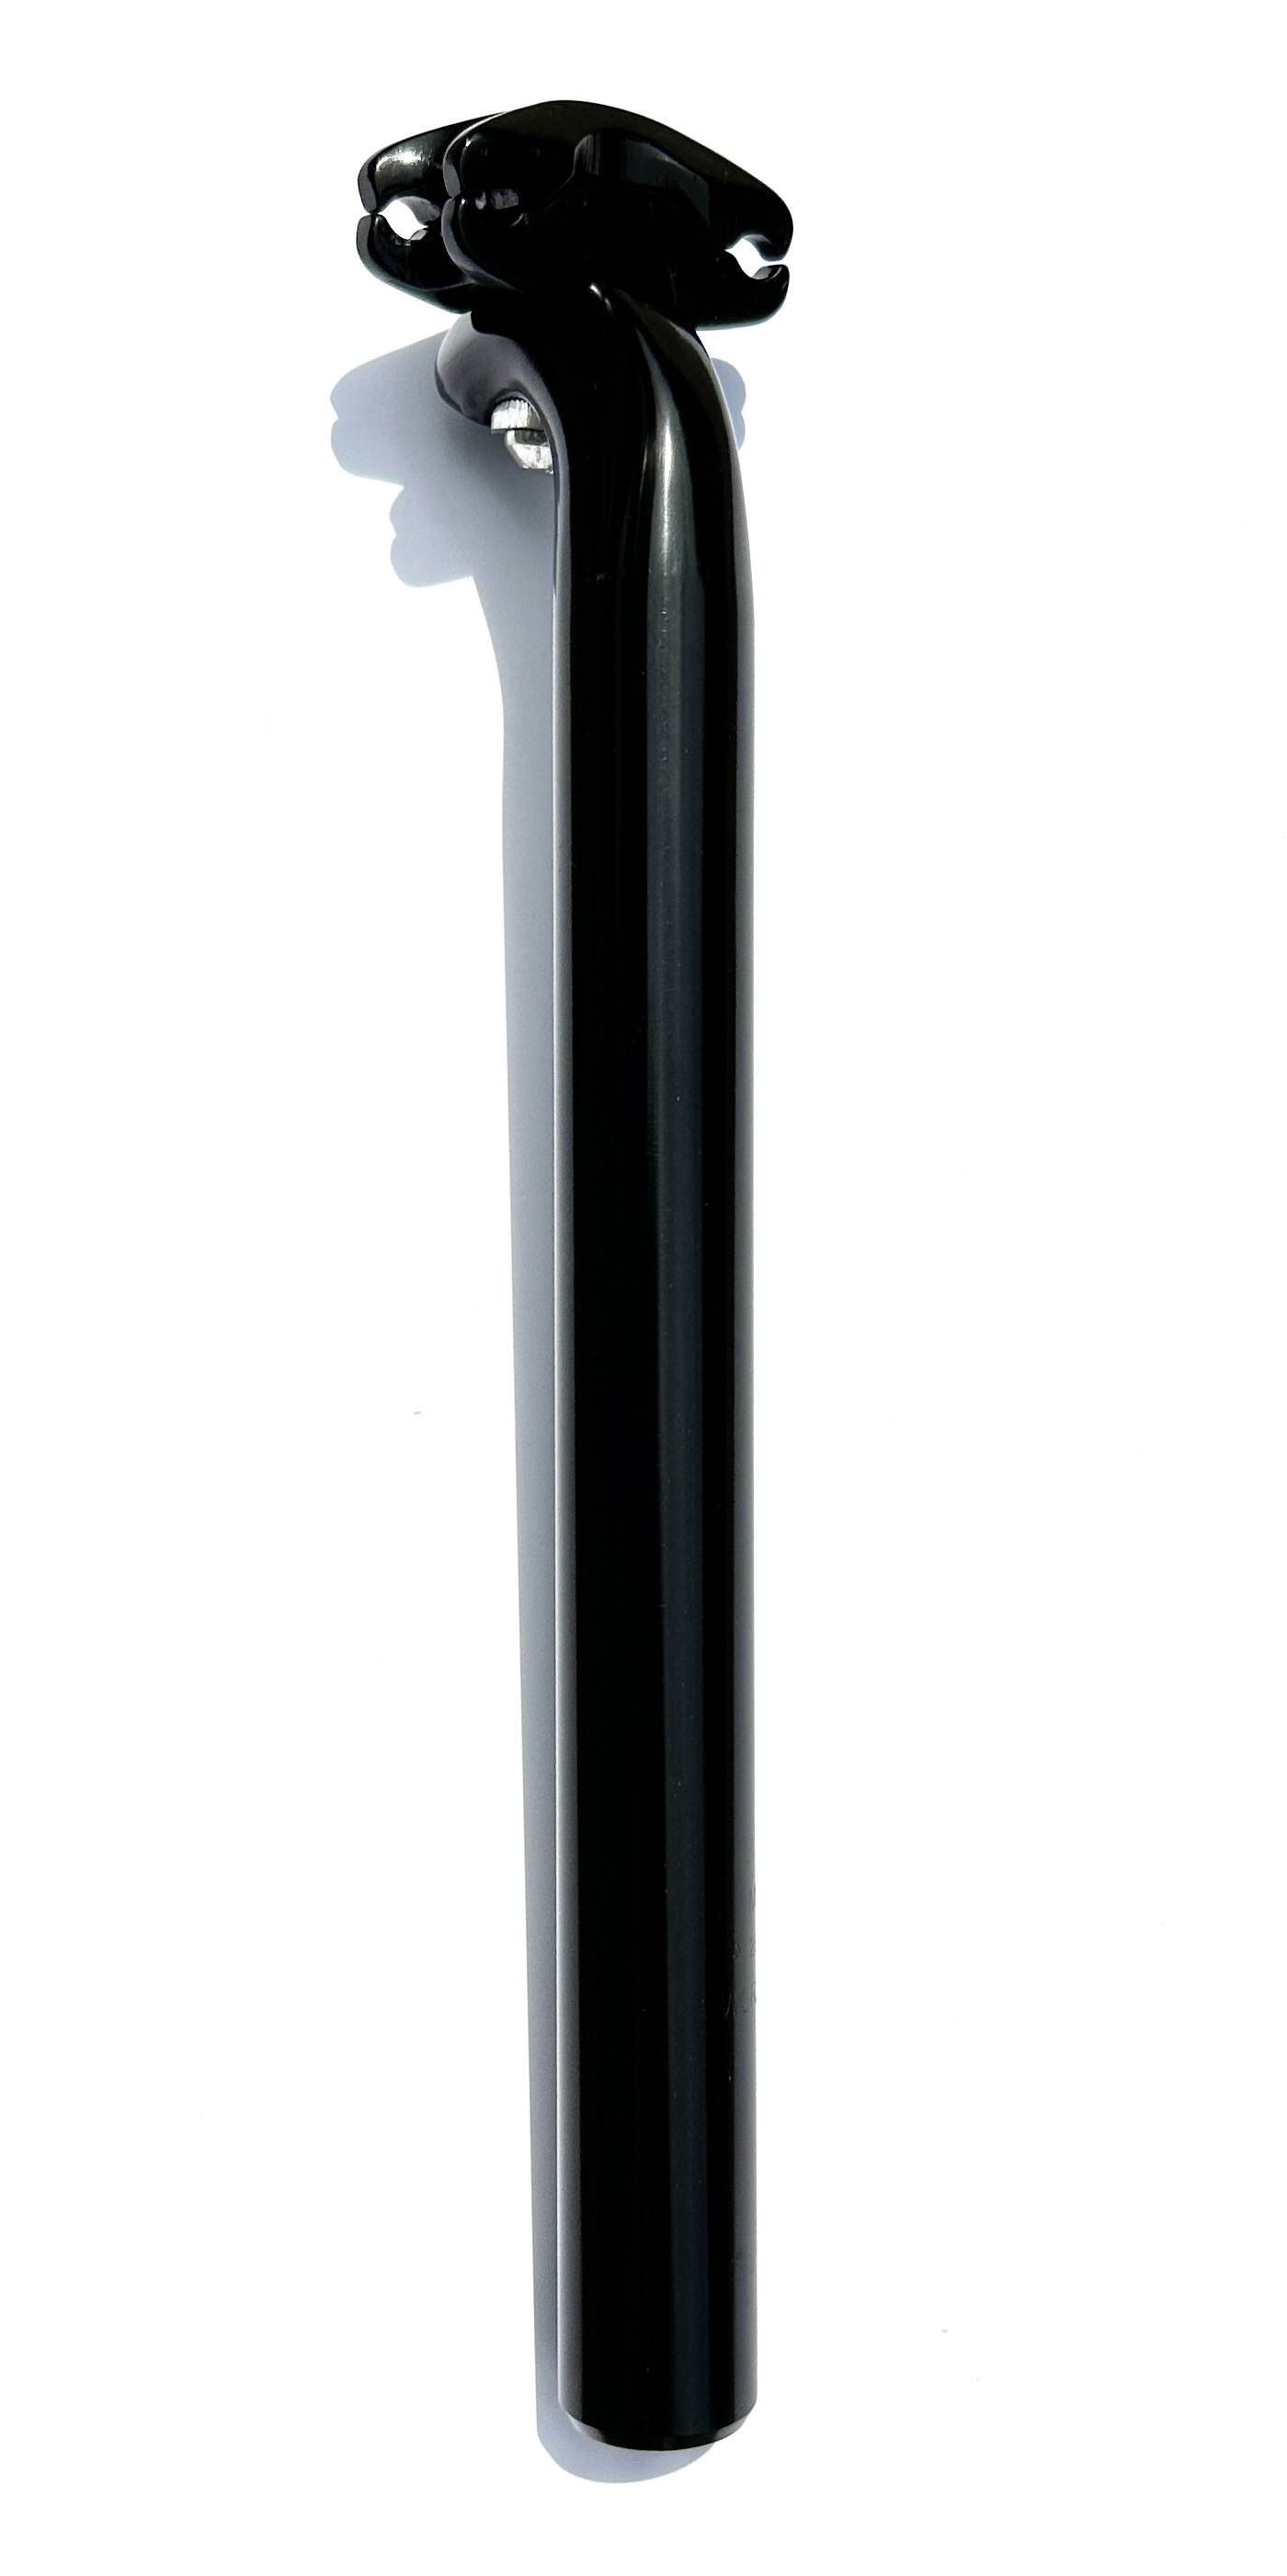 Fuxon SP 248  Tija de sillín con patente  28mm  300 mm Alu